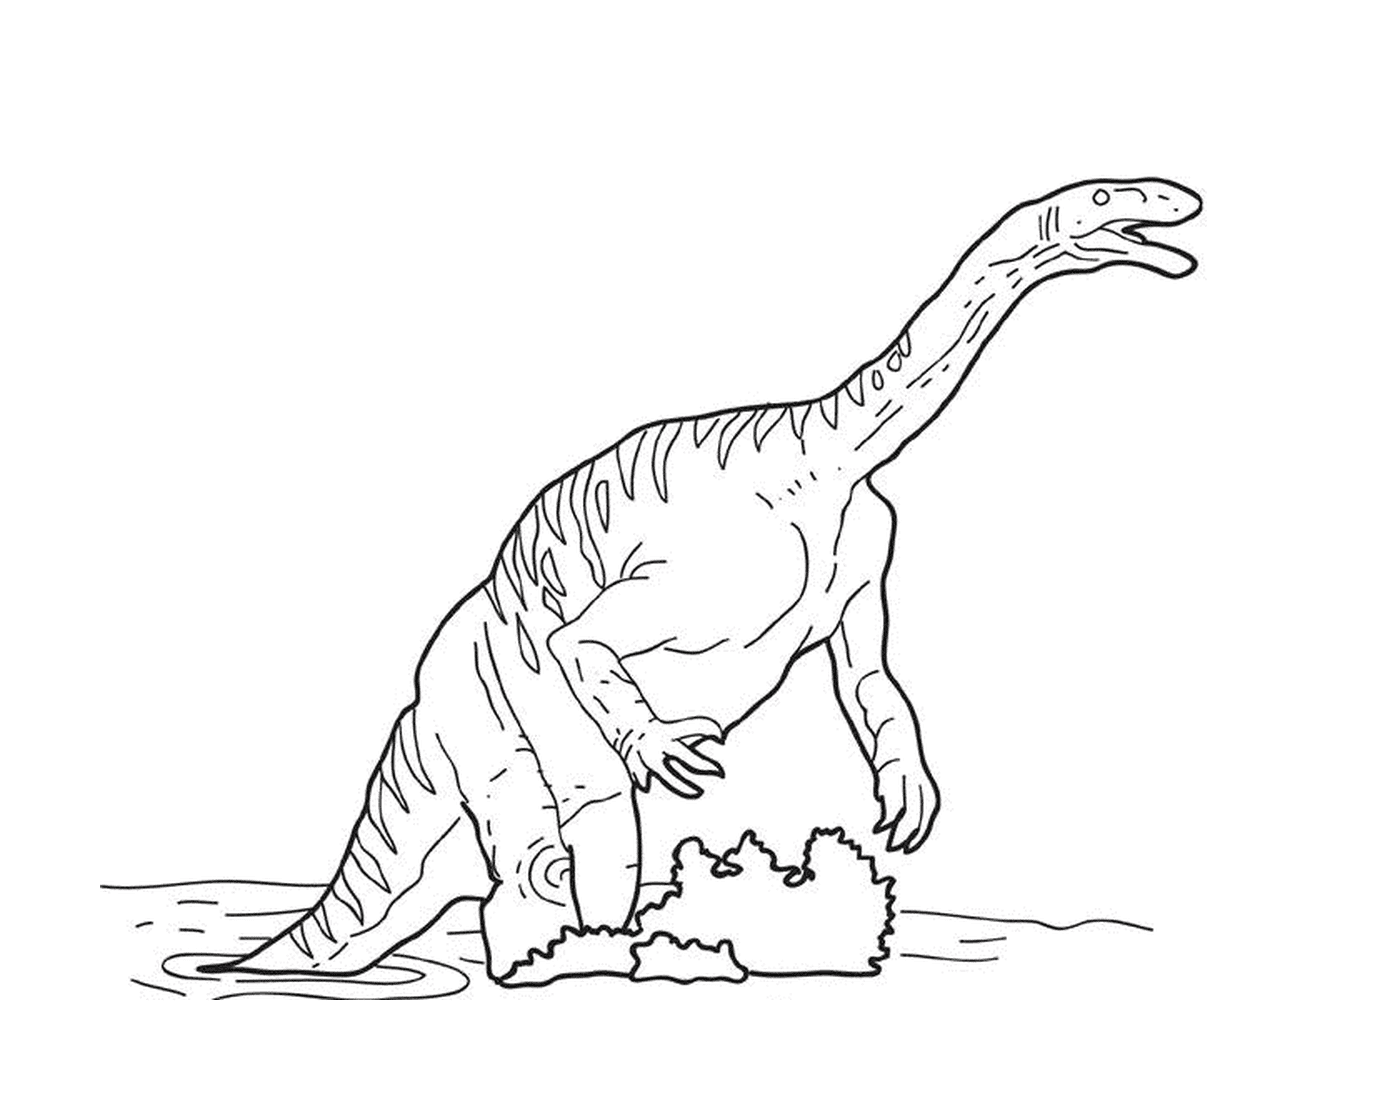  دال - ديناصور يلعب في الماء 